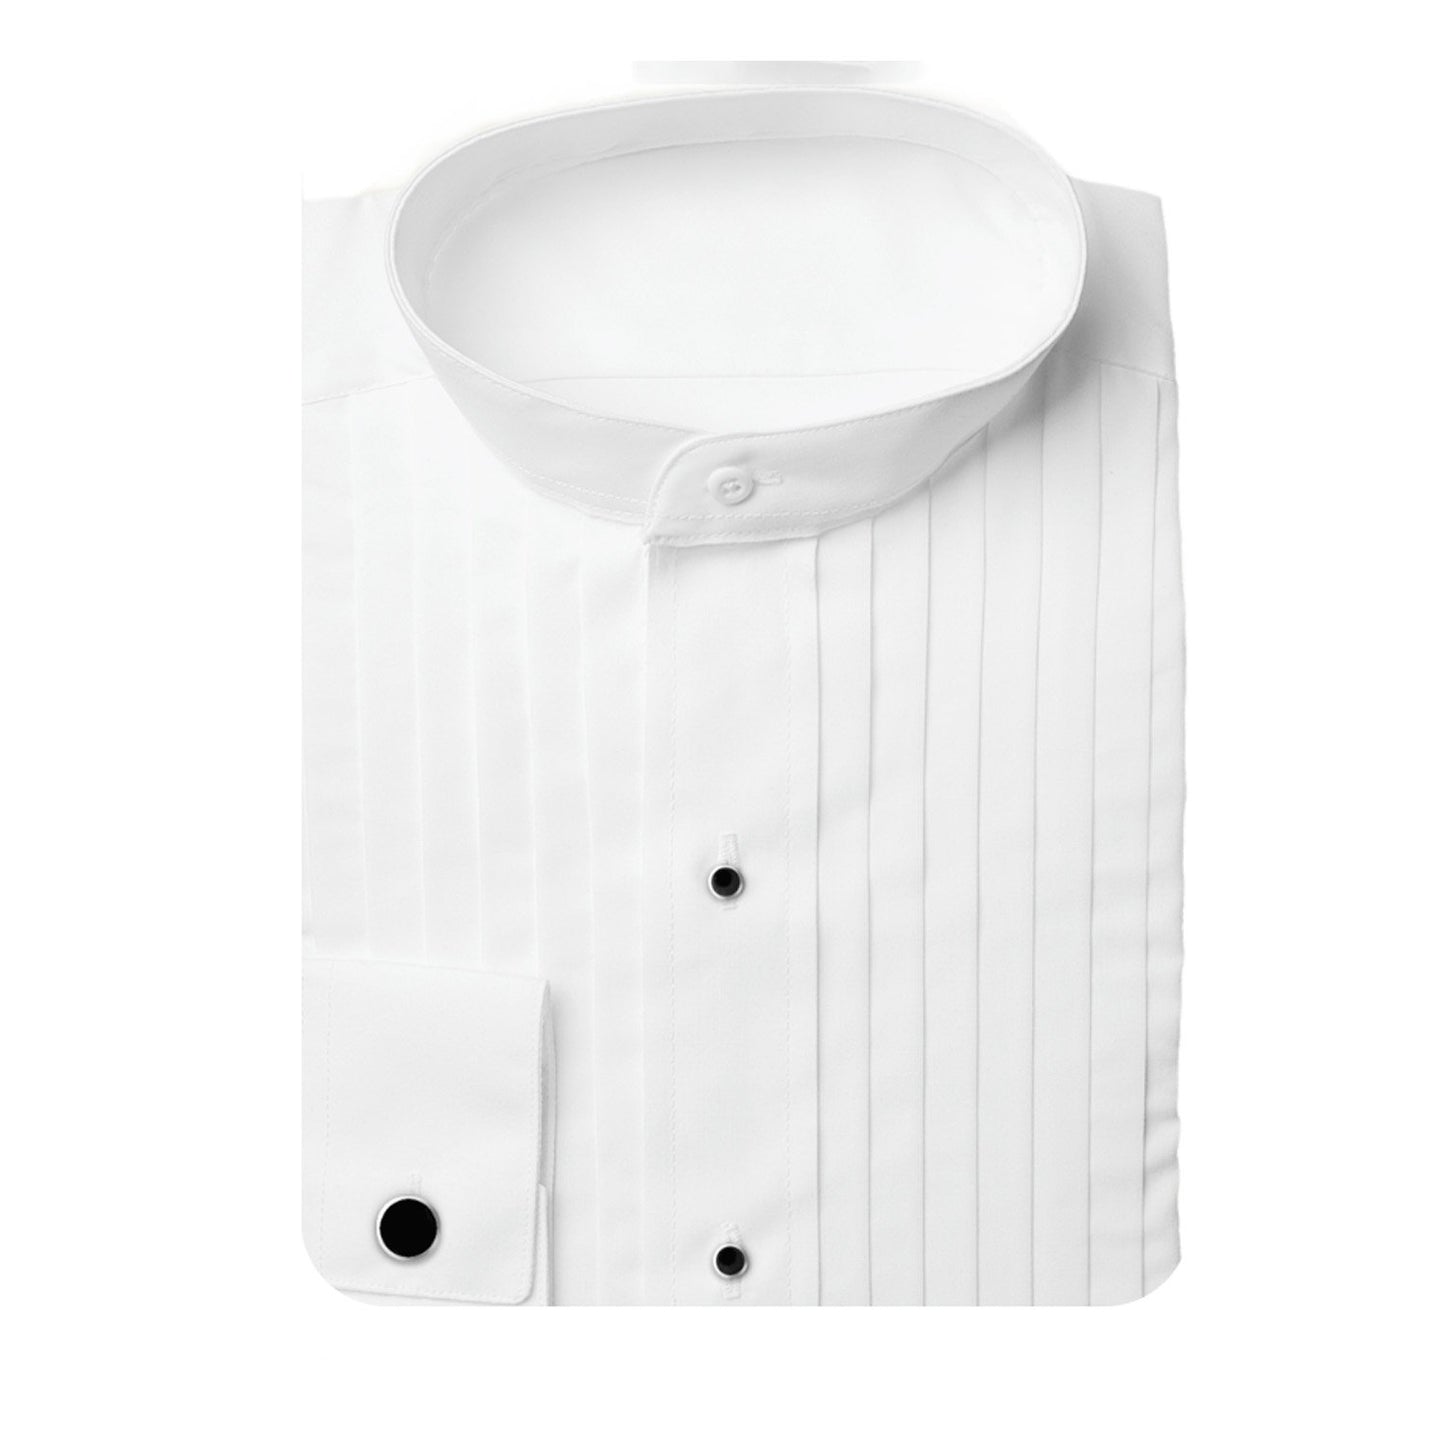 Henry Segal Mens 1/2 Pleat Banded Collar Tuxedo Shirt